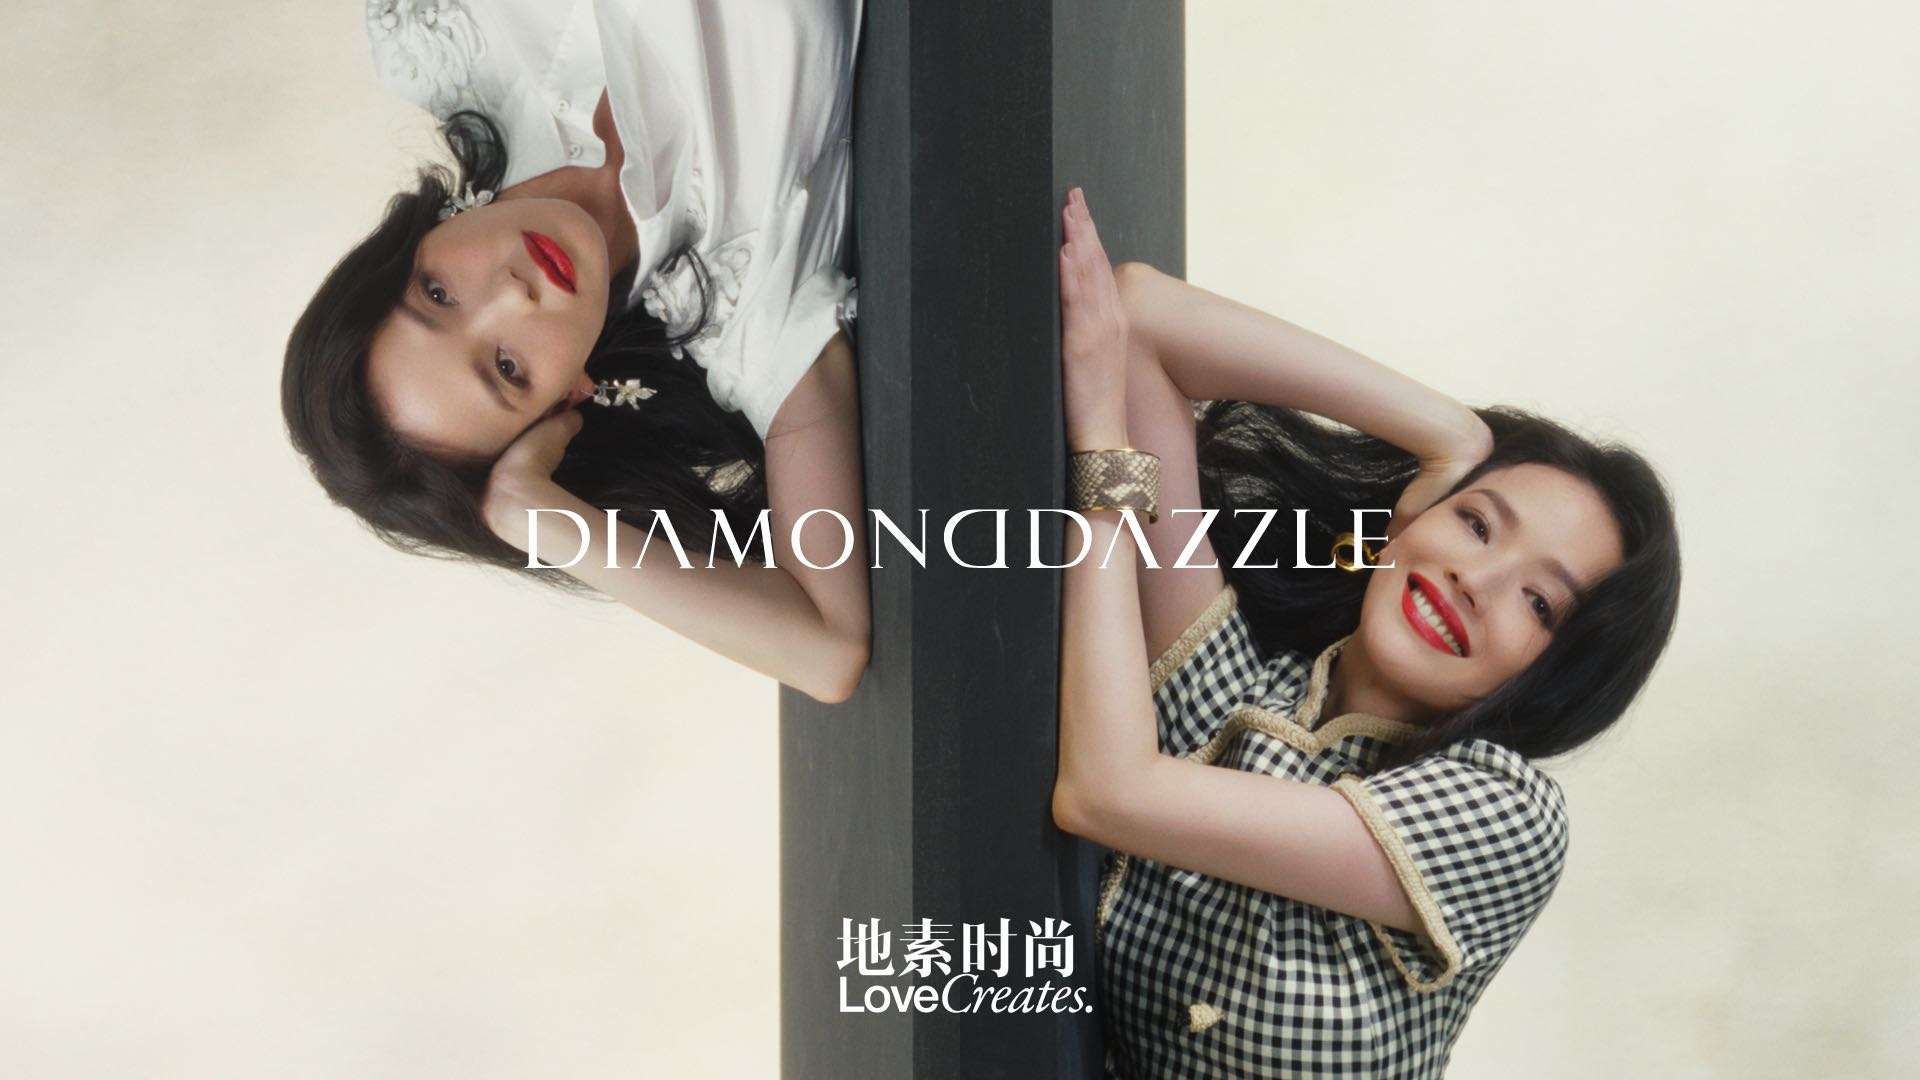 DIAMONDDAZZLE / SHU QI 03